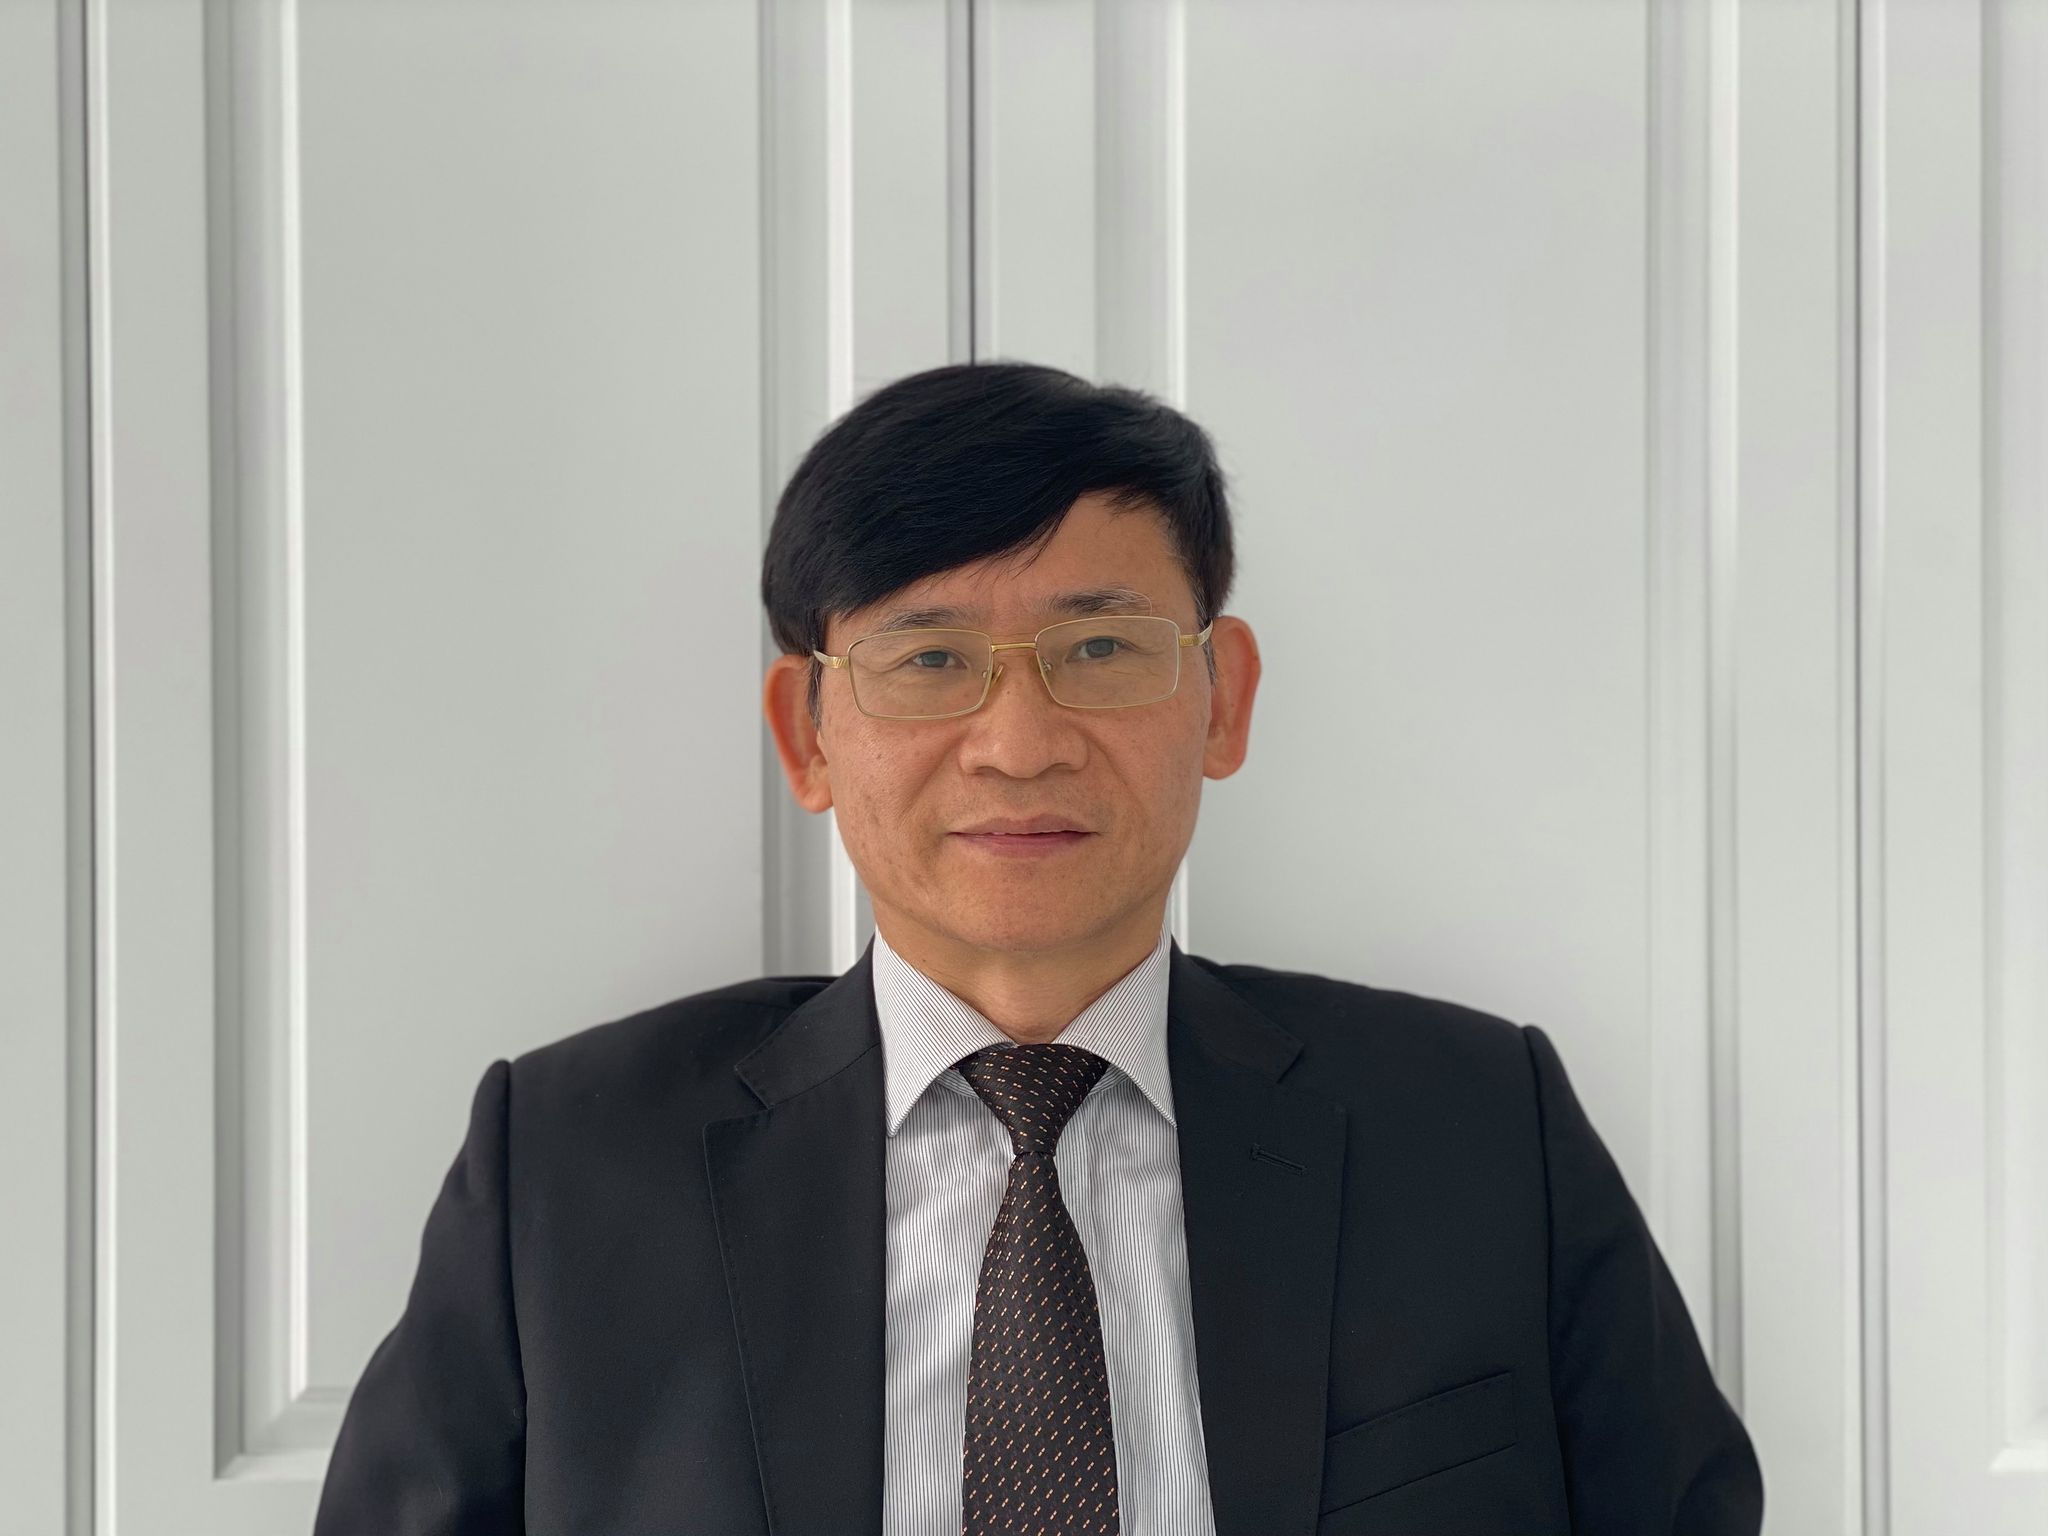 Luật sư Trương Thanh Đức: “Không có quy định nào cấm công ty chứng khoán vay vốn của nhà đầu tư”